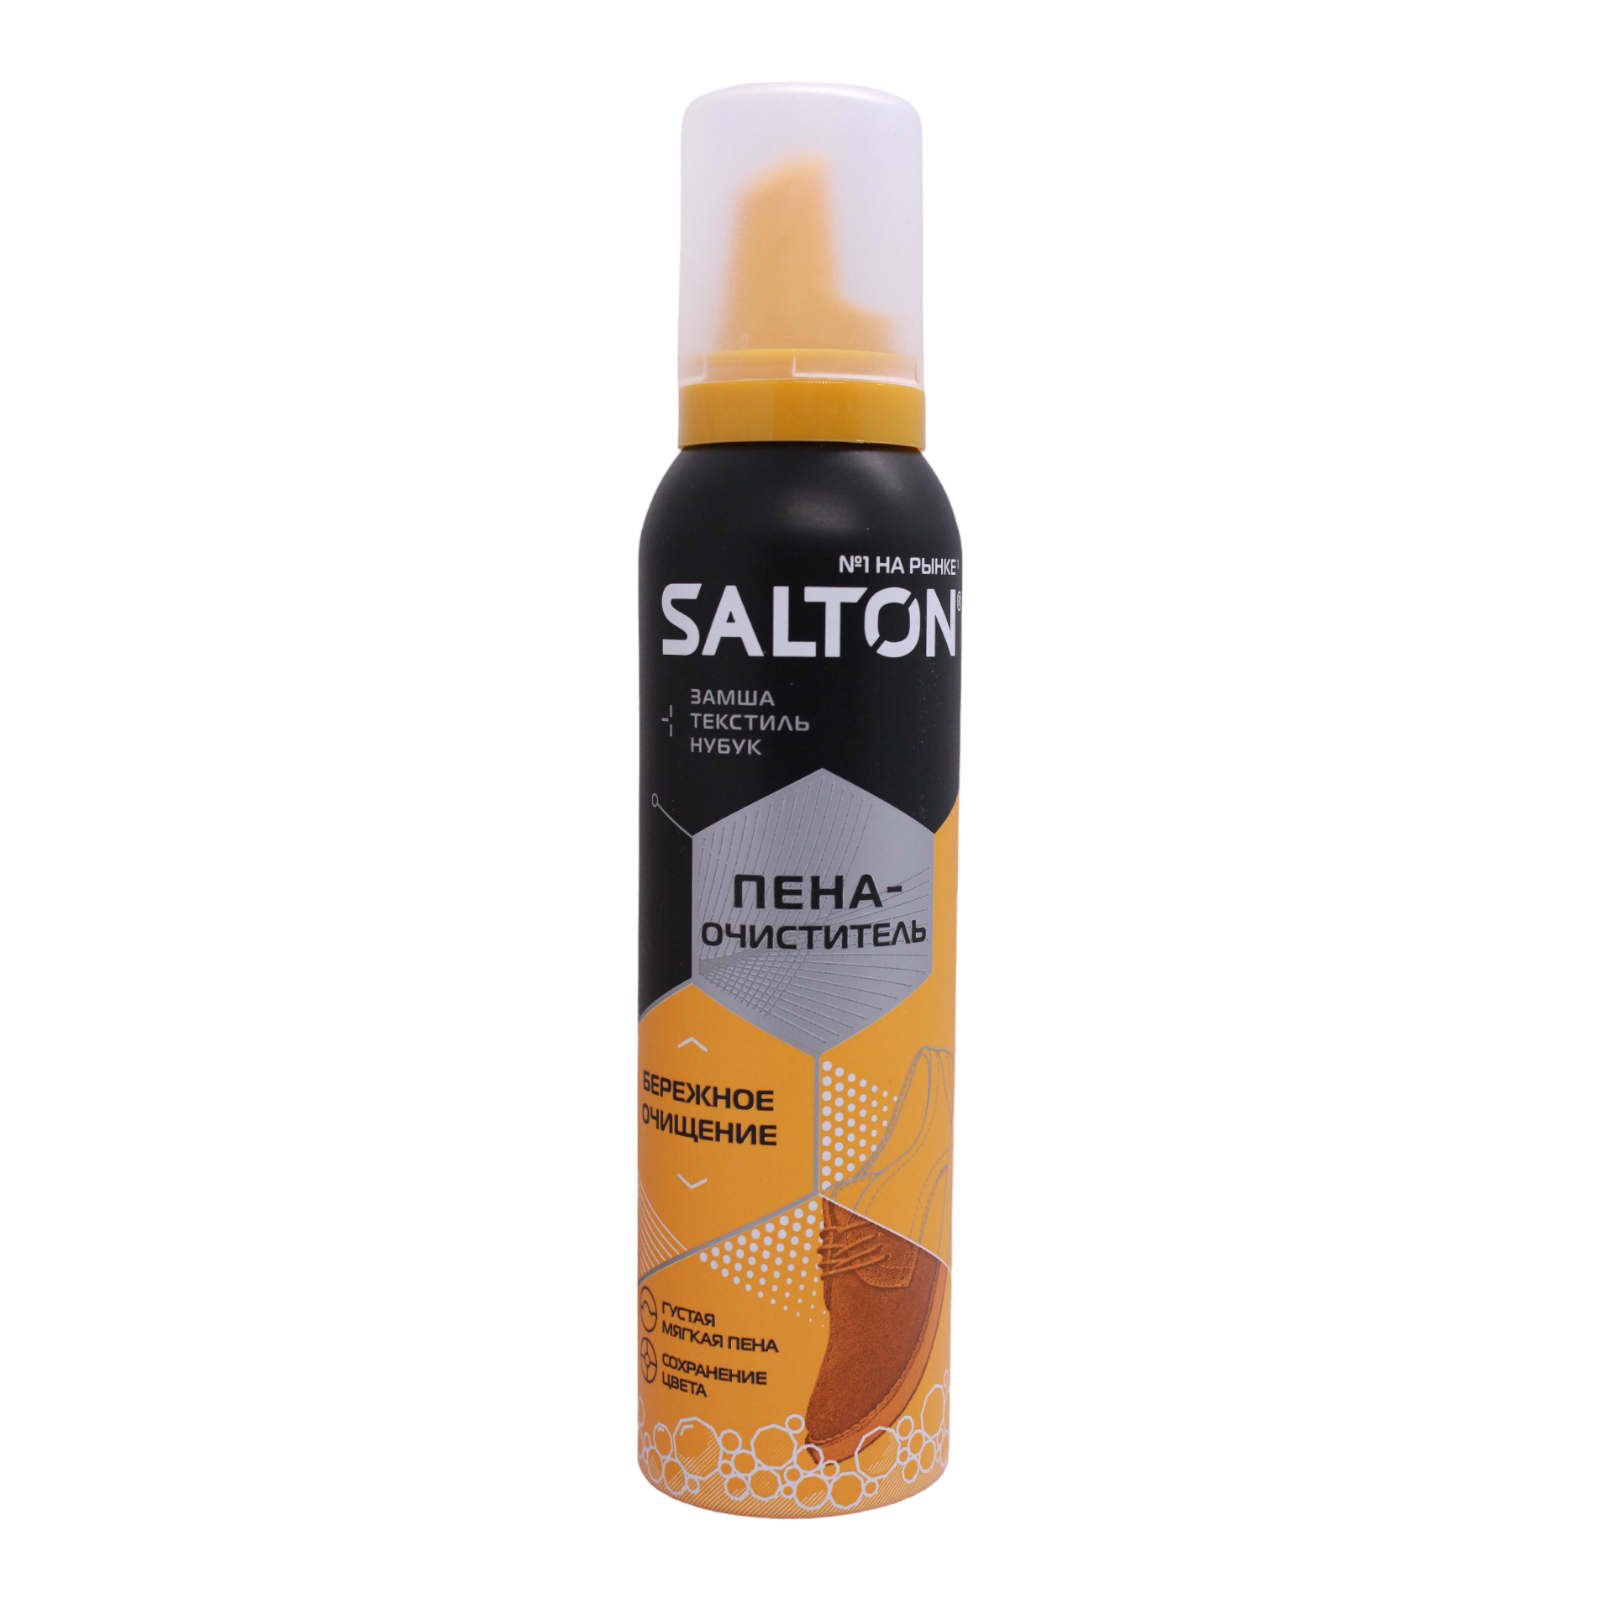 Salton Пена очиститель для гладкой кожи замши нубука и текстиля 150мл